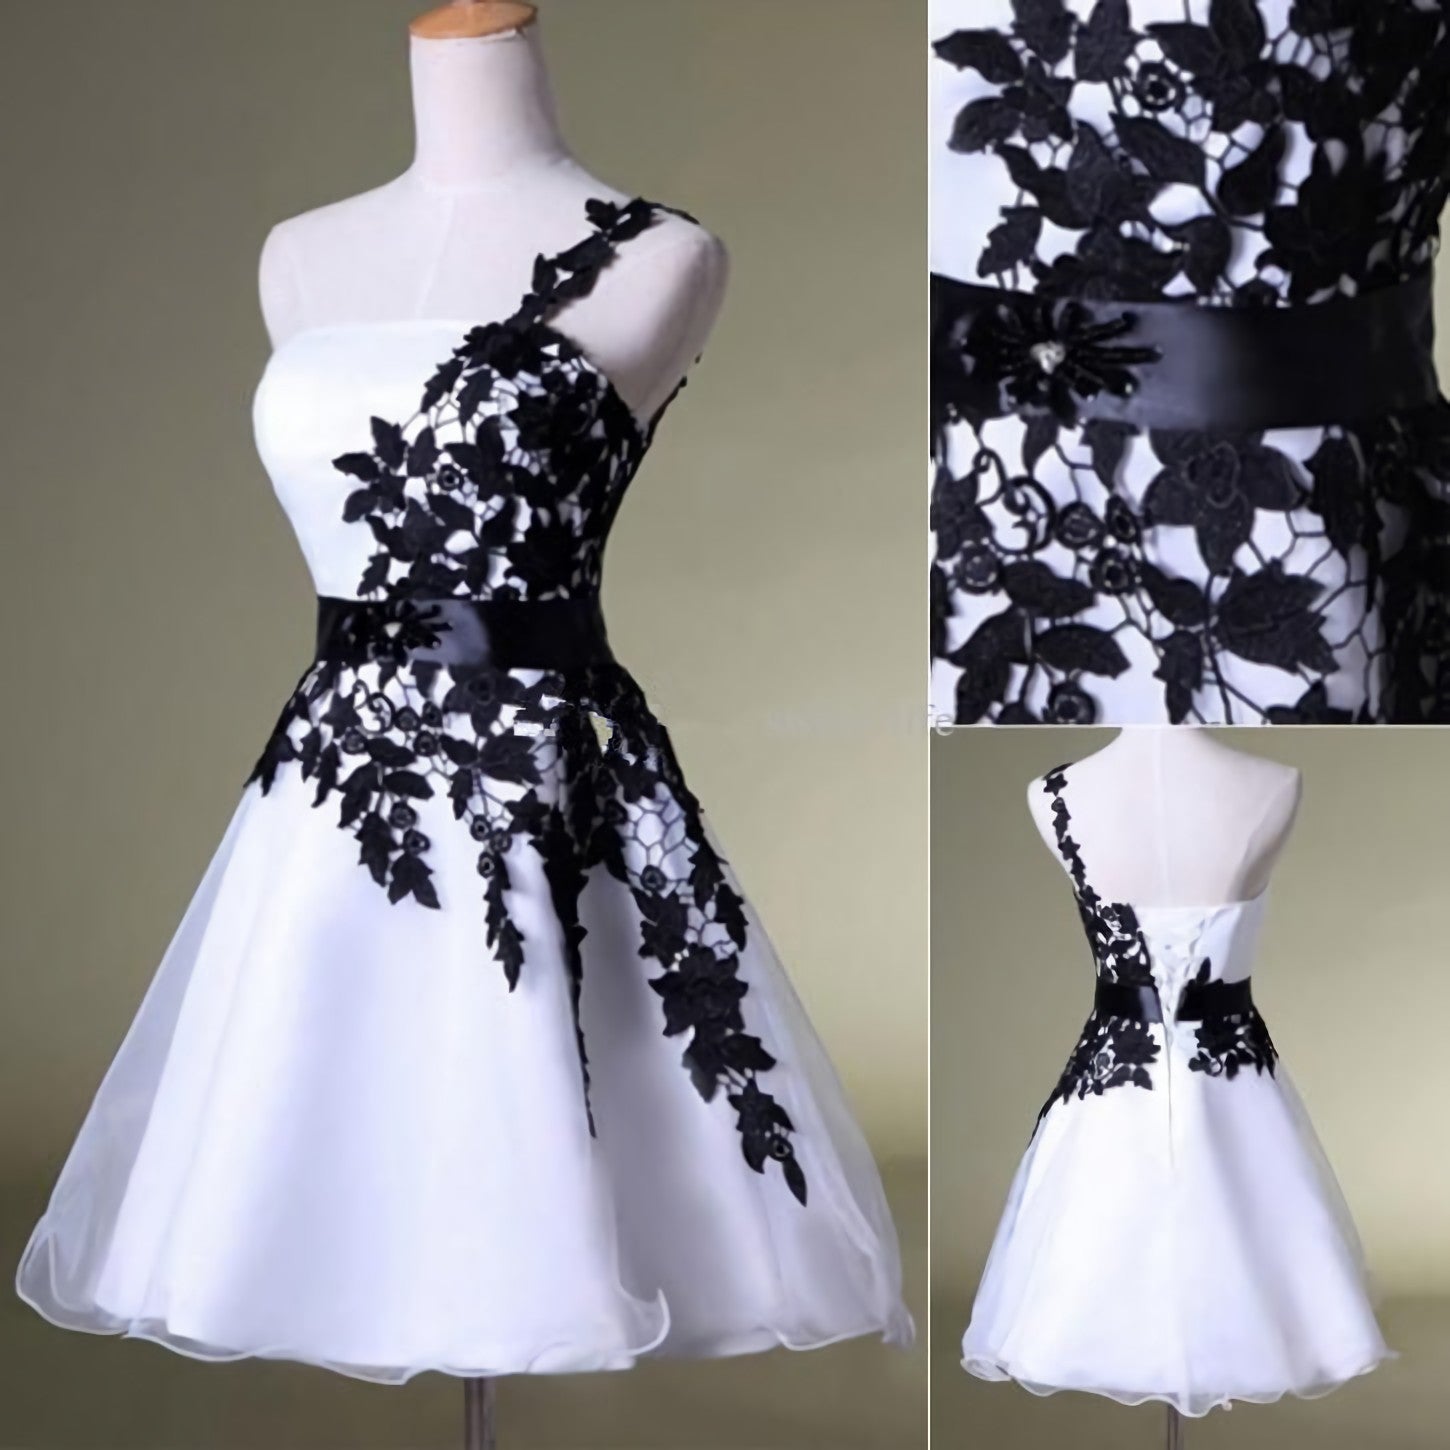 Prom Dresses Open Back, Hot Sales Vintage Black Lace White Organza Short One Shoulder Belt Custom Made Hd021 Prom Dresses